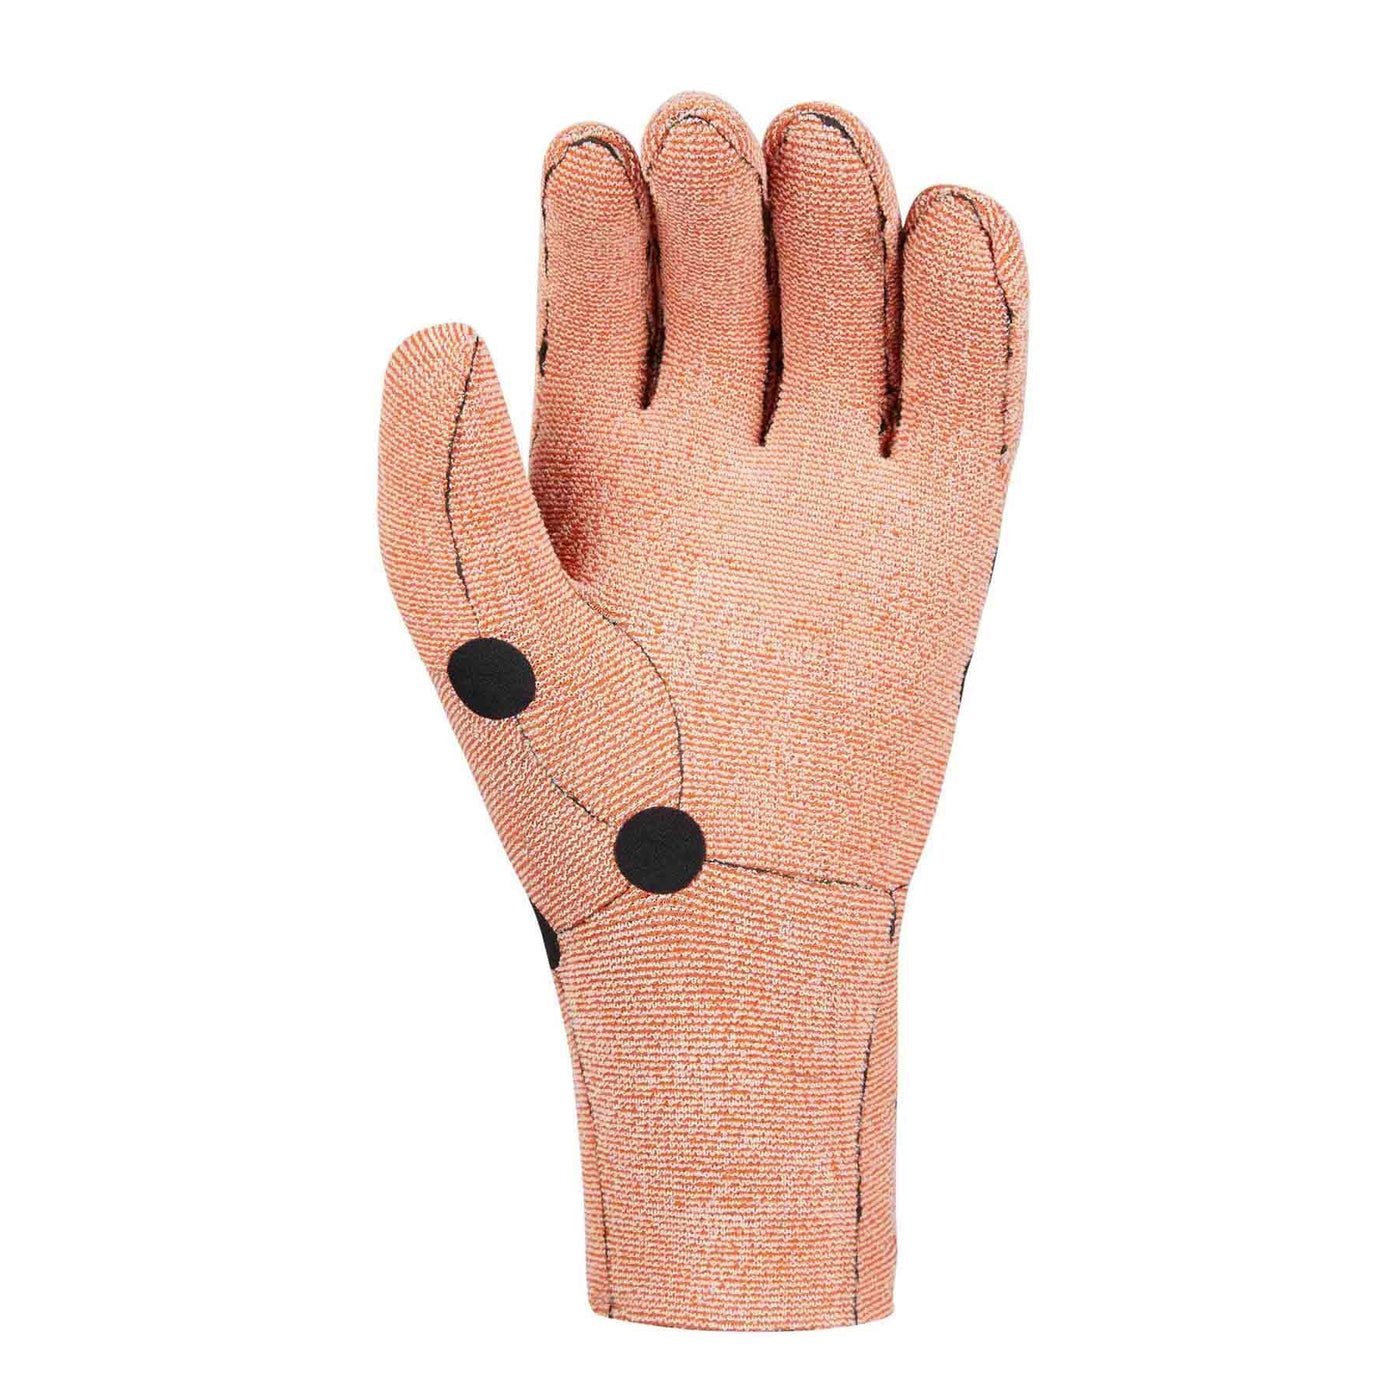 Mystic Marshall 5 Finger 3mm Gloves MYSTIC